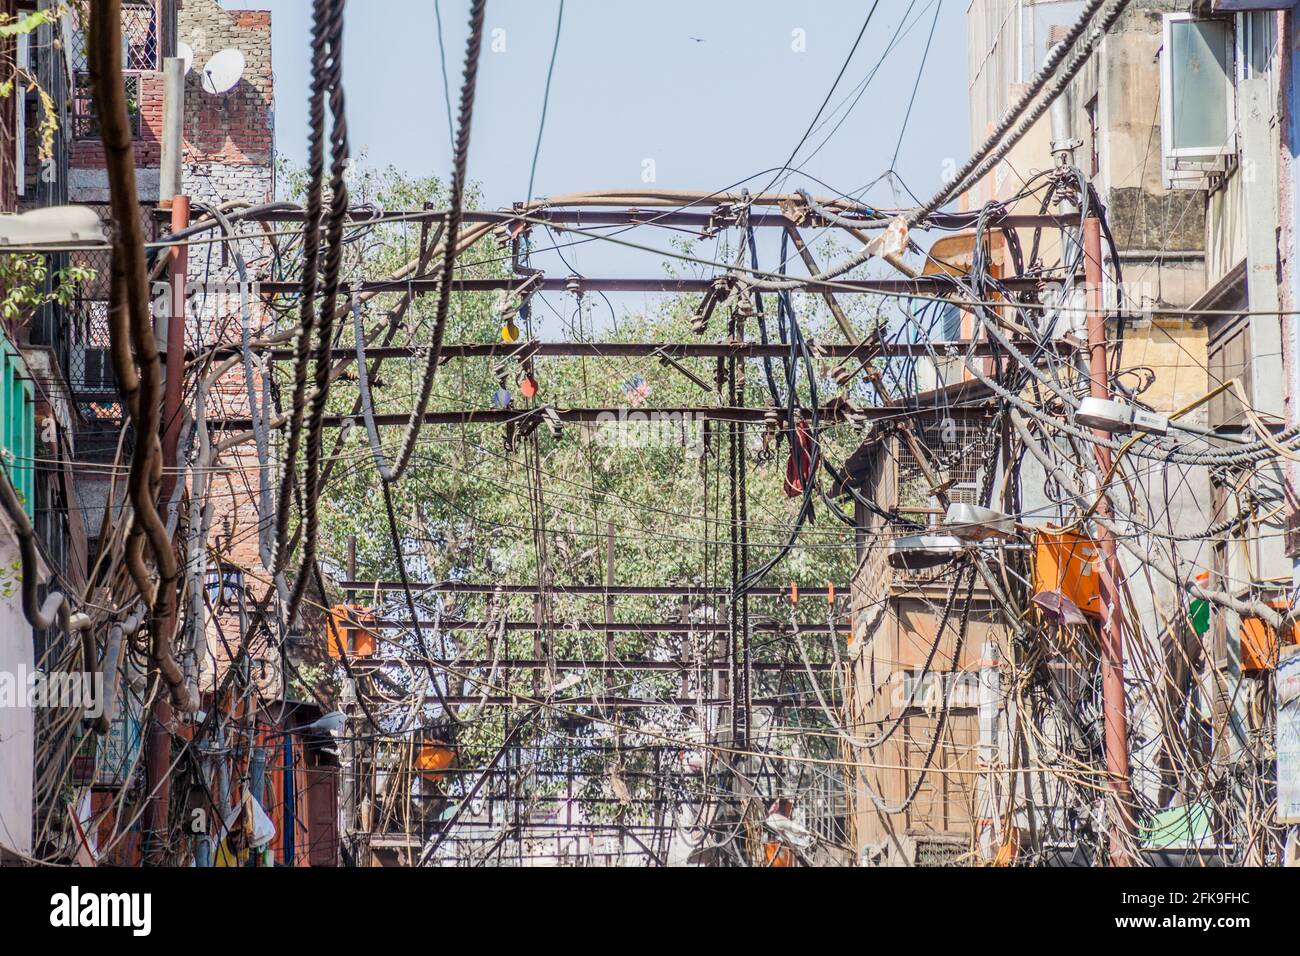 Désordre chaotique de câbles électriques dans le centre de Delhi, Inde Banque D'Images